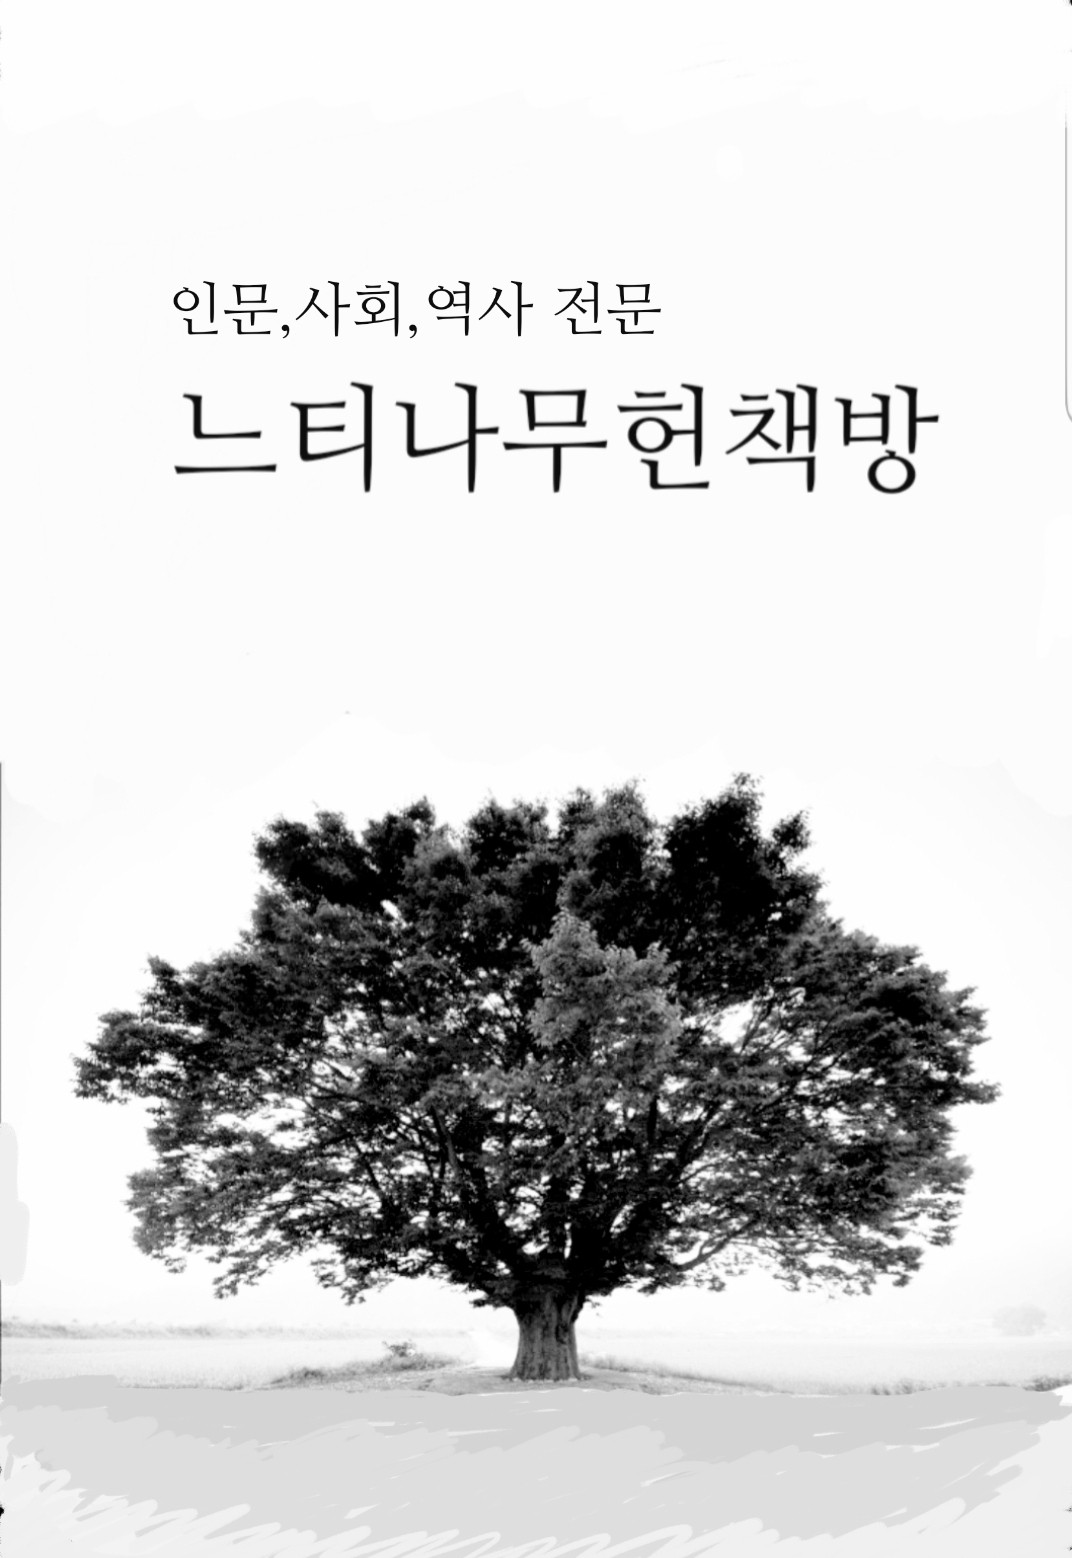 미국 브루클린박물관 소장 한국문화재 - 해외소장문화재조사보고서 제14책 (알특8코너)